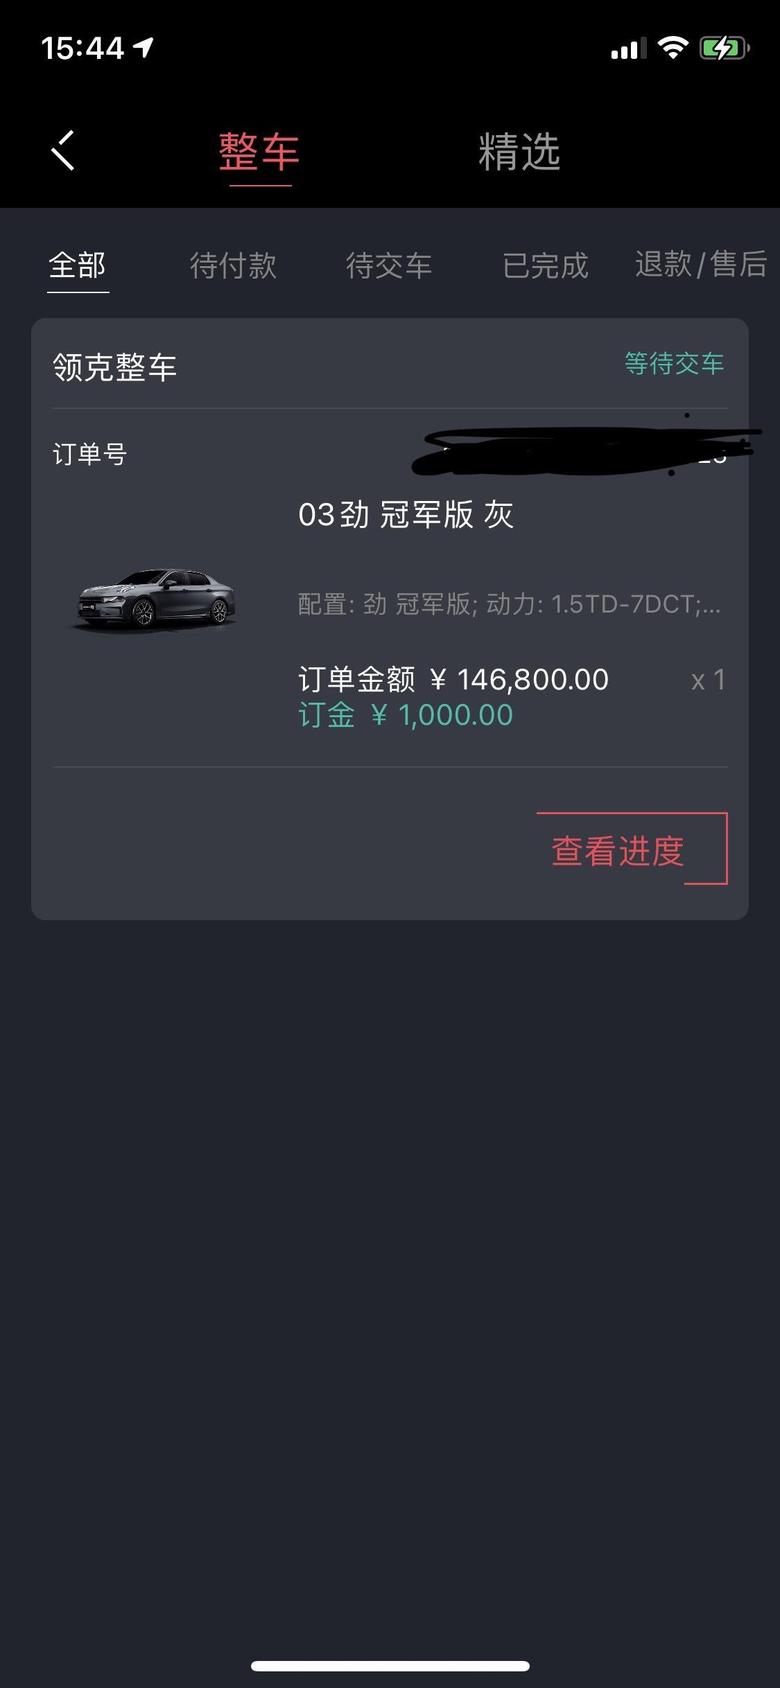 领克03 近期杭州订车的兄弟们大概等了多久啊。我在4.10订车。1.5冠军。目前还没消息太墨迹了